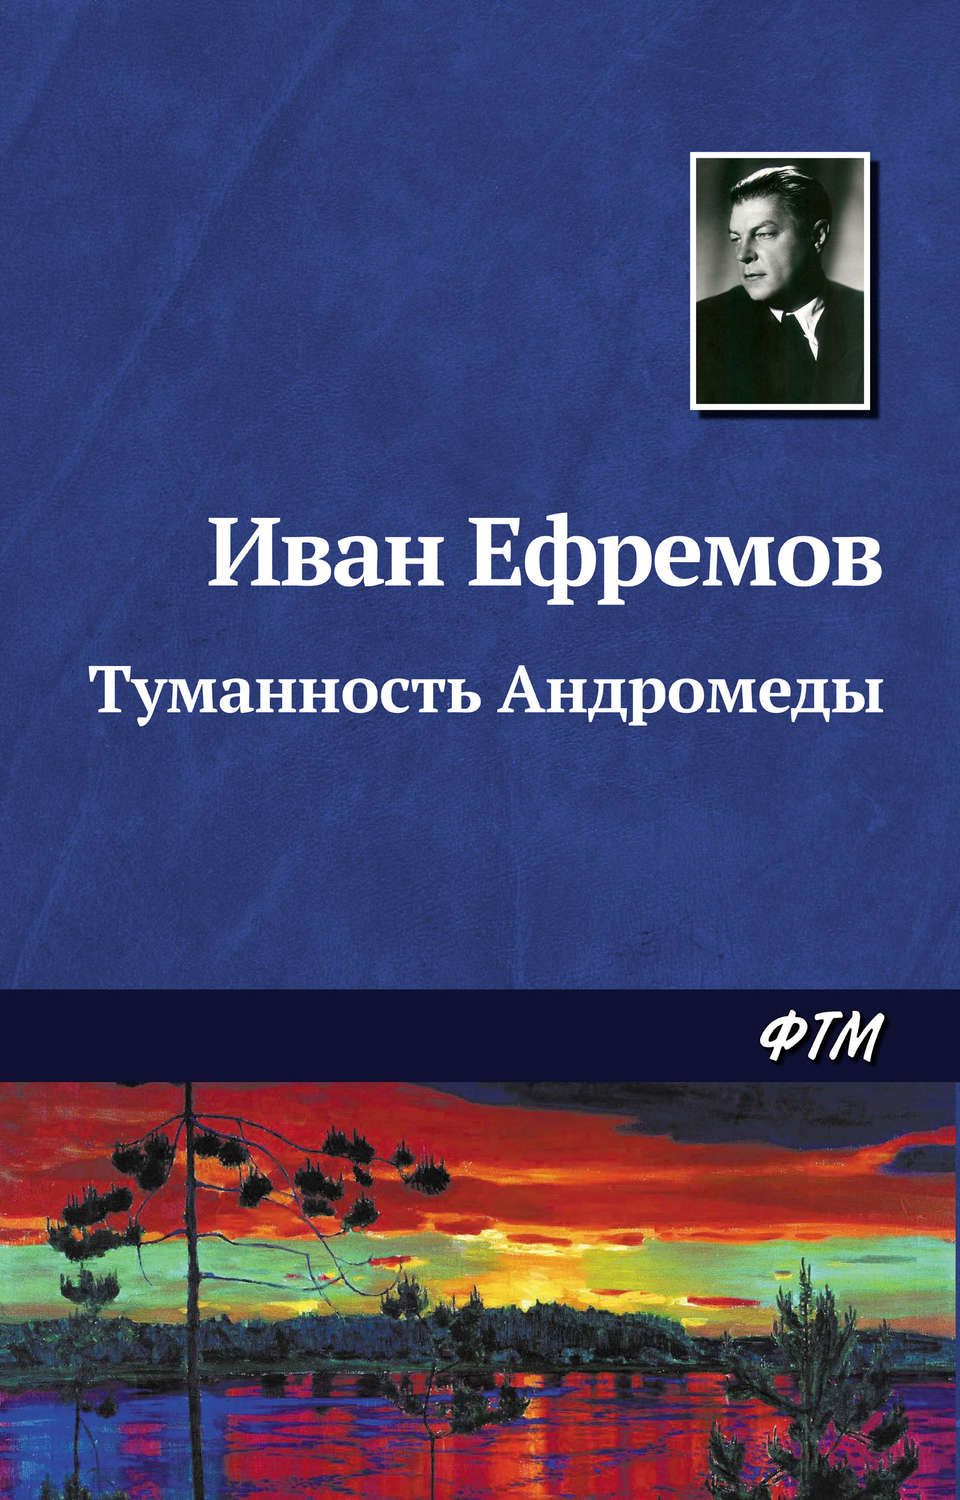 Скачать книги бесплатно fb2 детективы советские